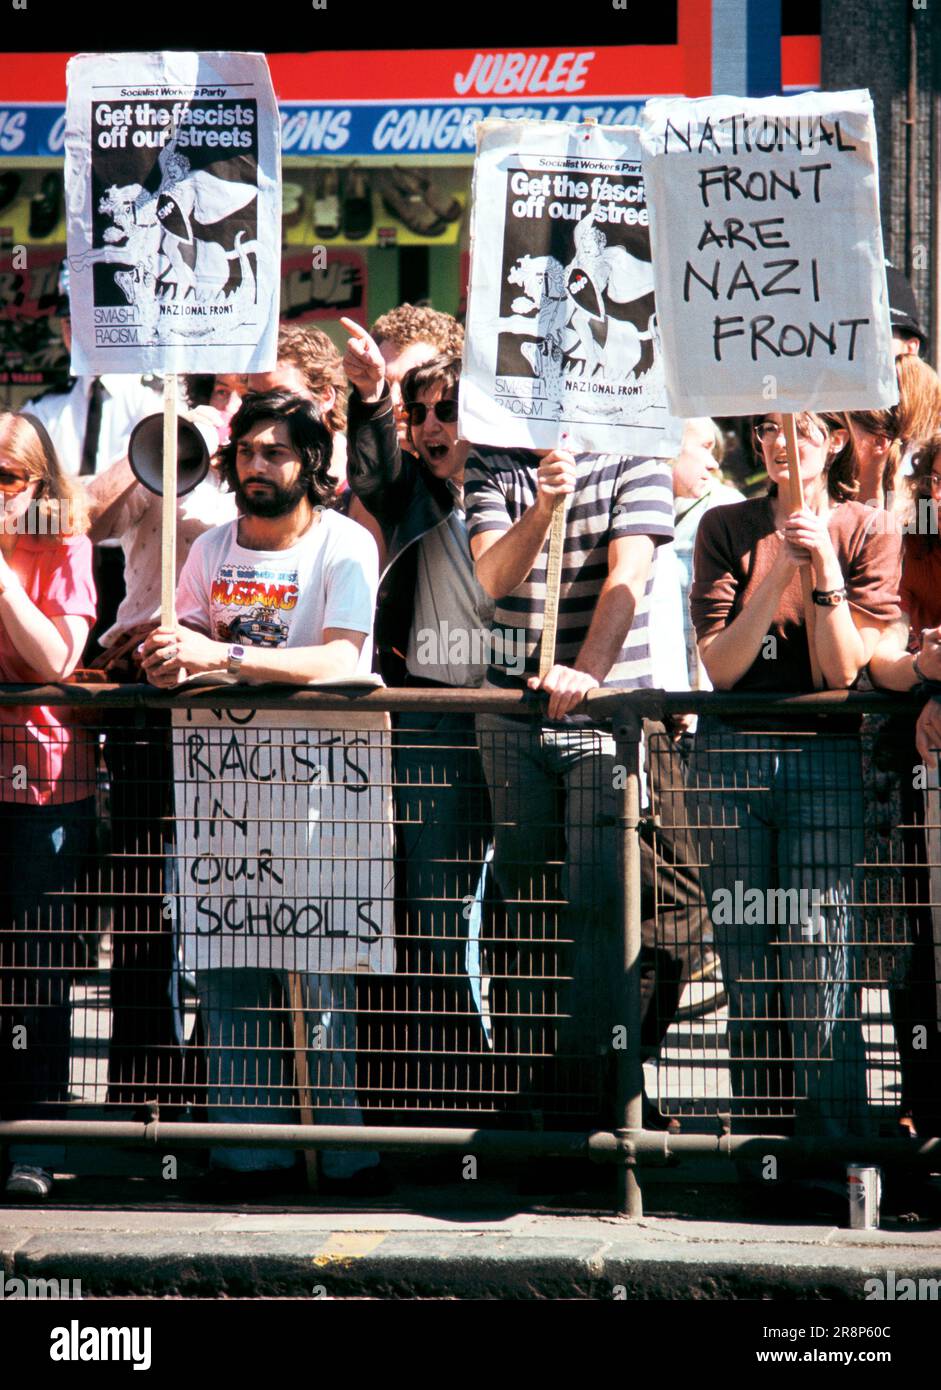 SWP Partito Socialista dei lavoratori 1970s manifestazione nell'estremità orientale di Londra contro il fronte Nazionale e il razzismo. Questa è stata una demo settimanale regolare all'estremità nord di Brick Lane nell'estate del 1978. Tower Hamlets, Londra est, Inghilterra circa 1978. 70s OMERO SYKES Foto Stock